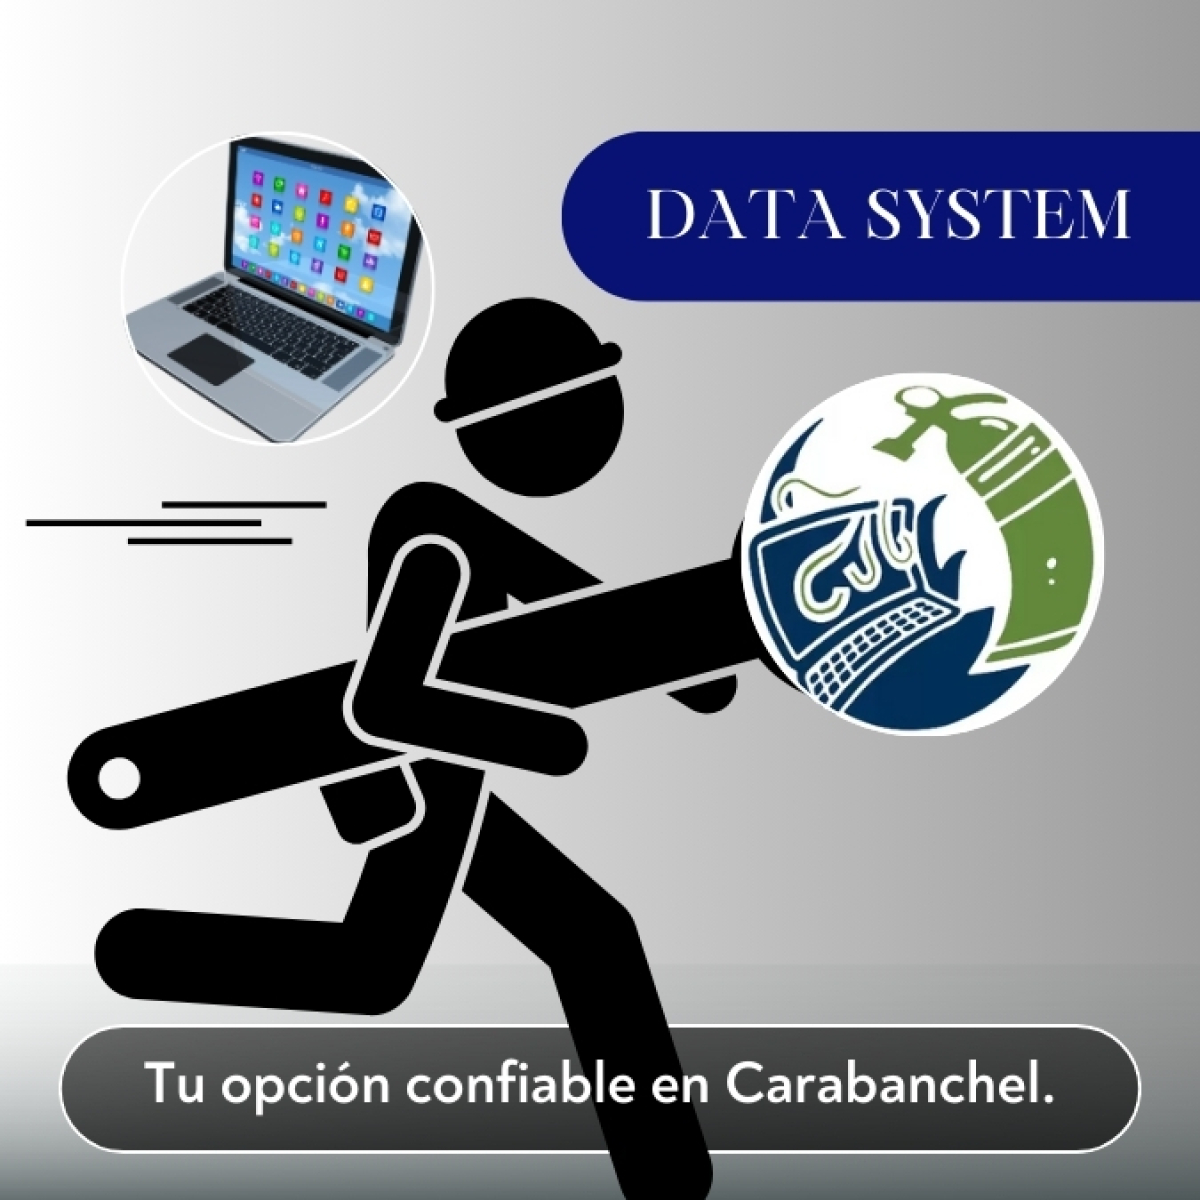 DATA SYSTEM - La opcion confiable para la reparacion de PC en Carabanchel.